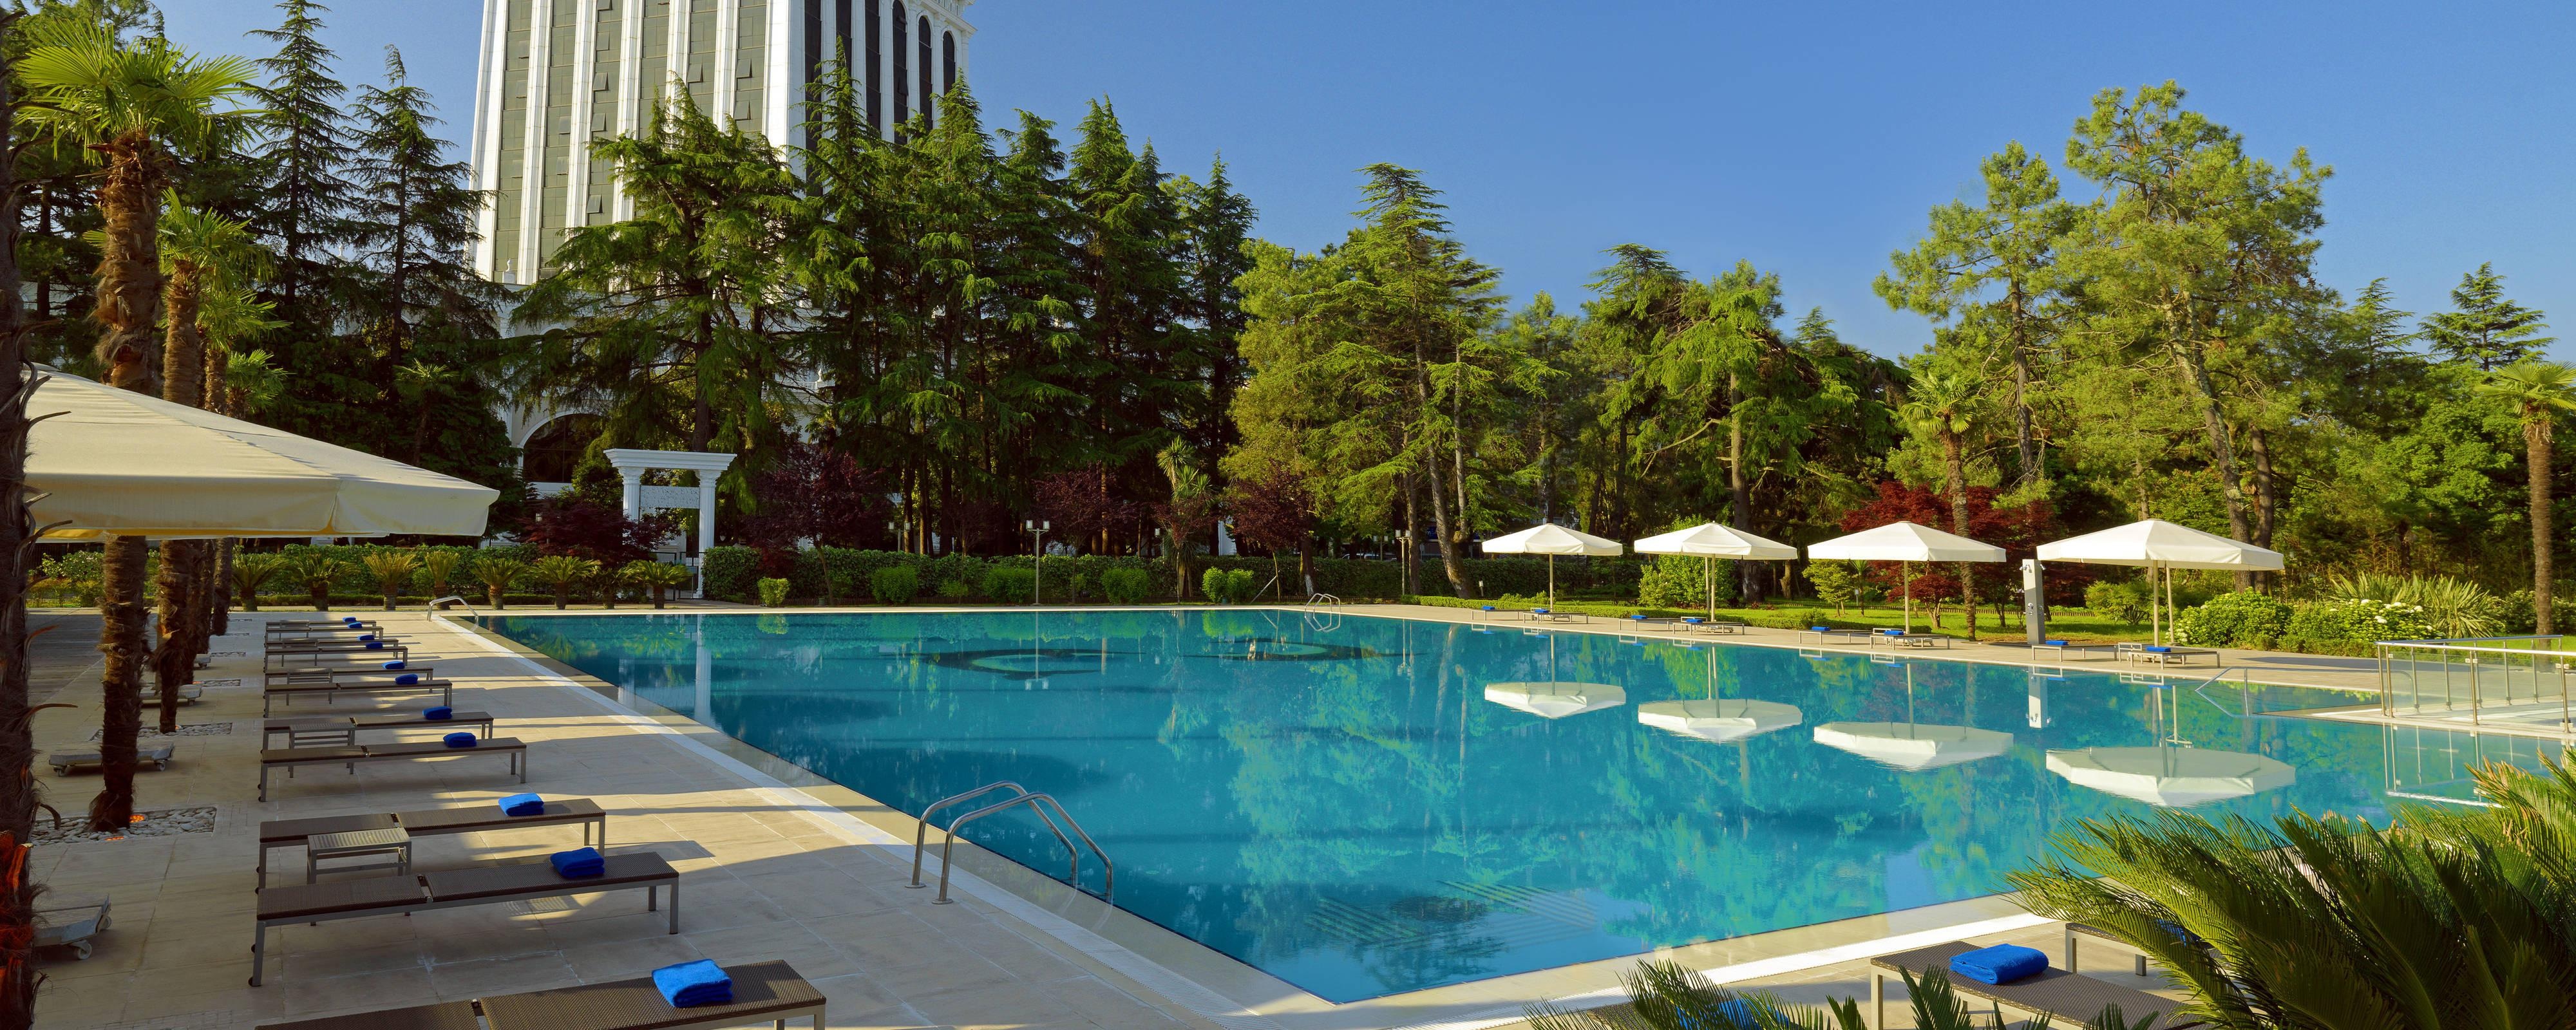 Image for Sheraton Batumi Hotel, a Marriott hotel.